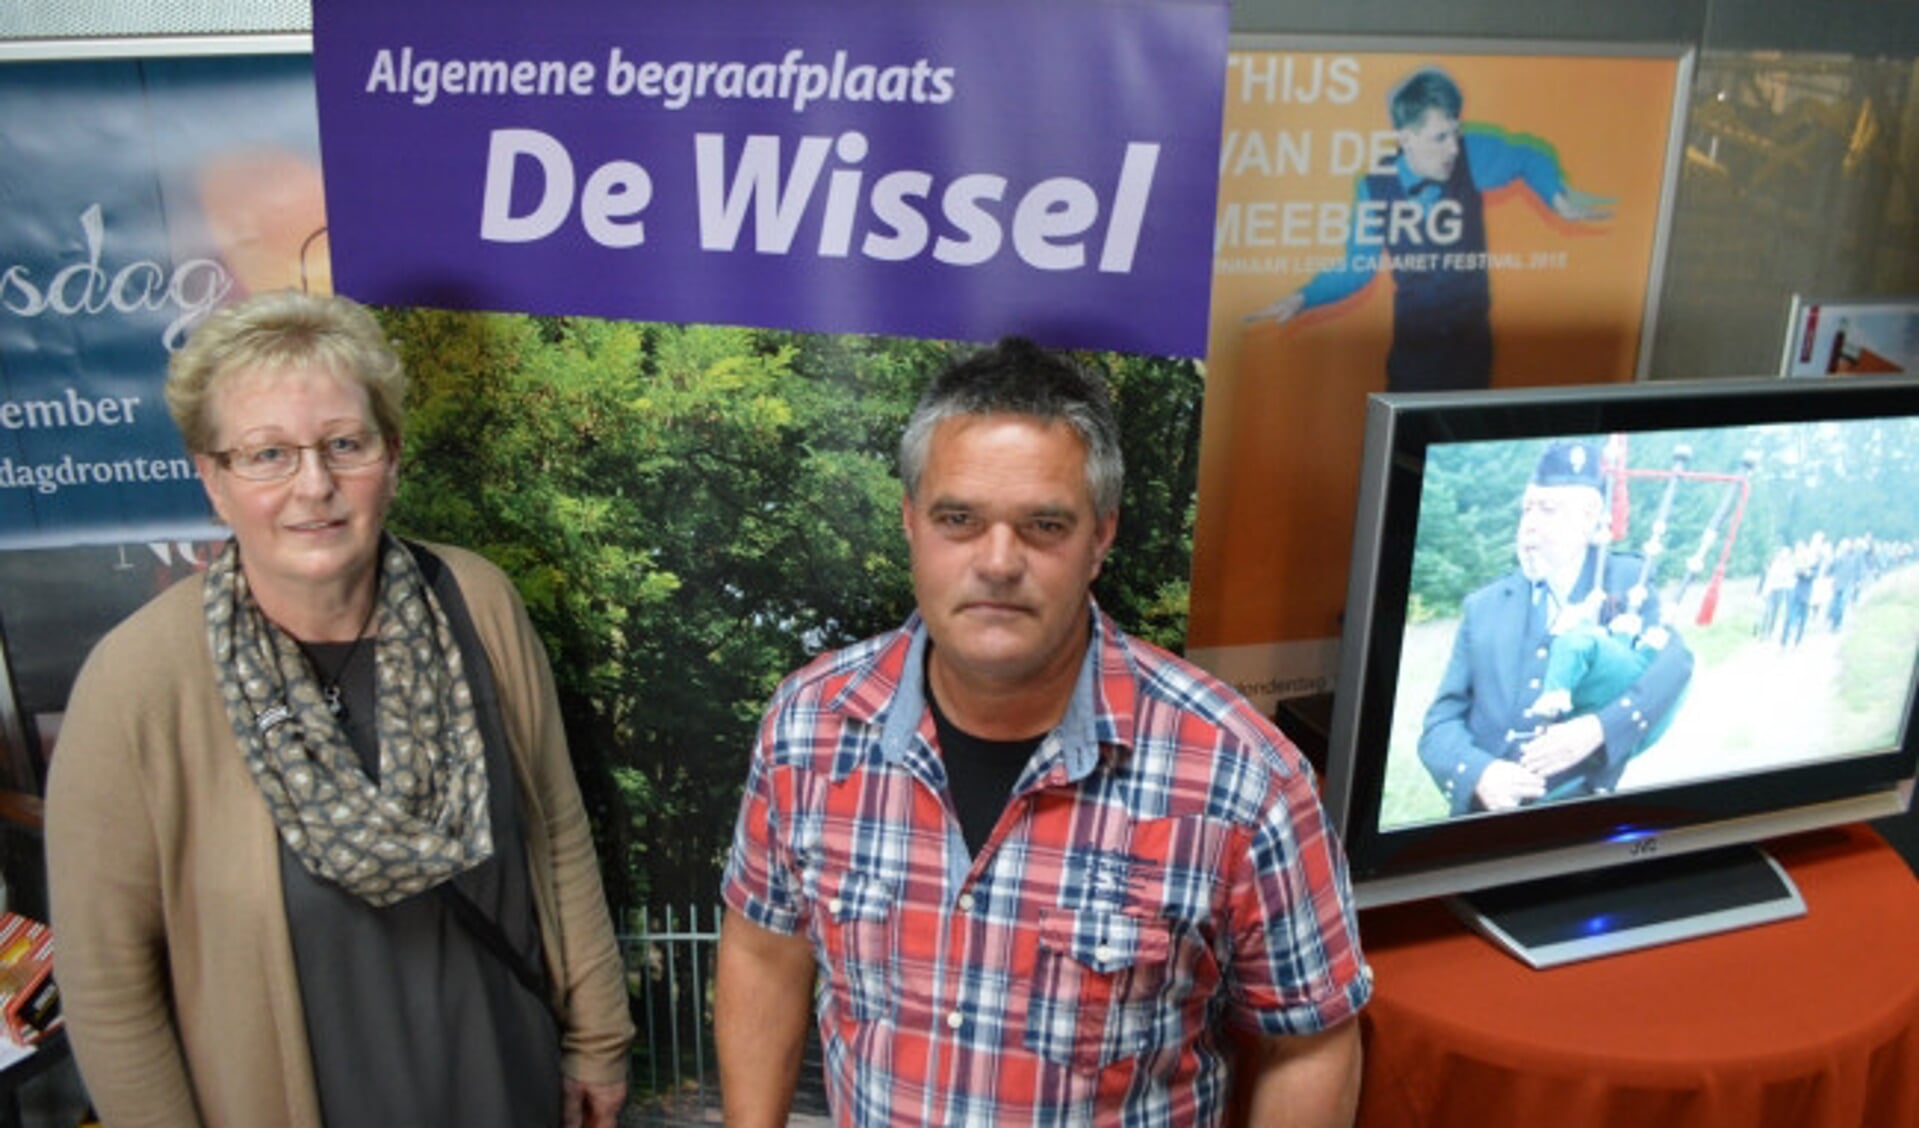  Medewerkers van begraafplaats De Wissel in Dronten.